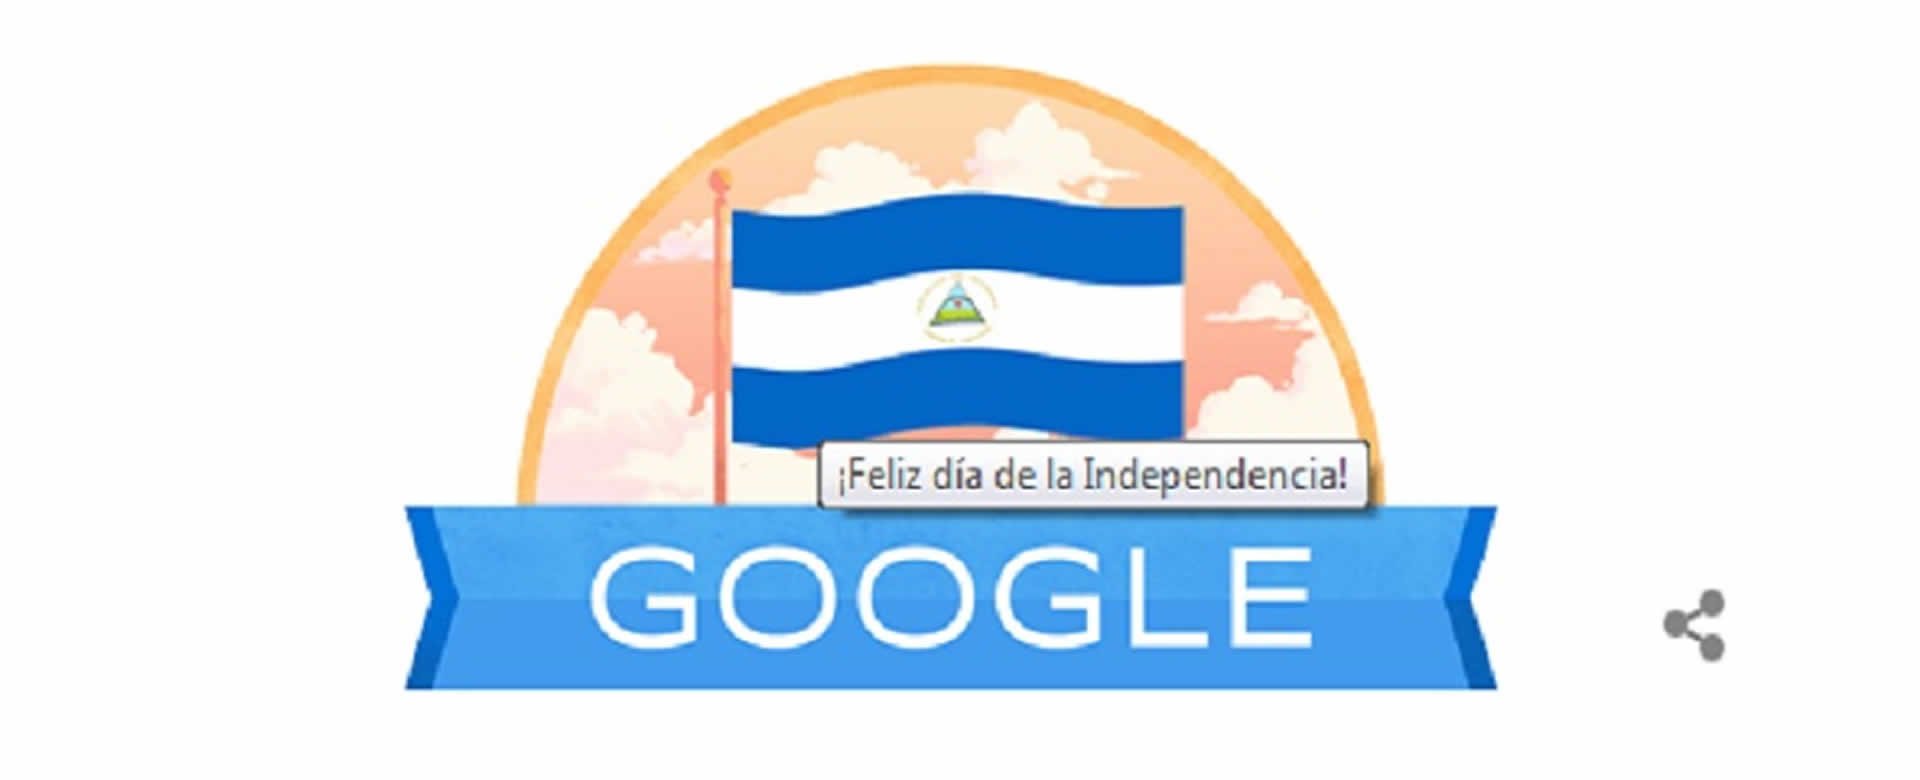 Google crea un Doodle para conmemorar la Independencia de Nicaragua